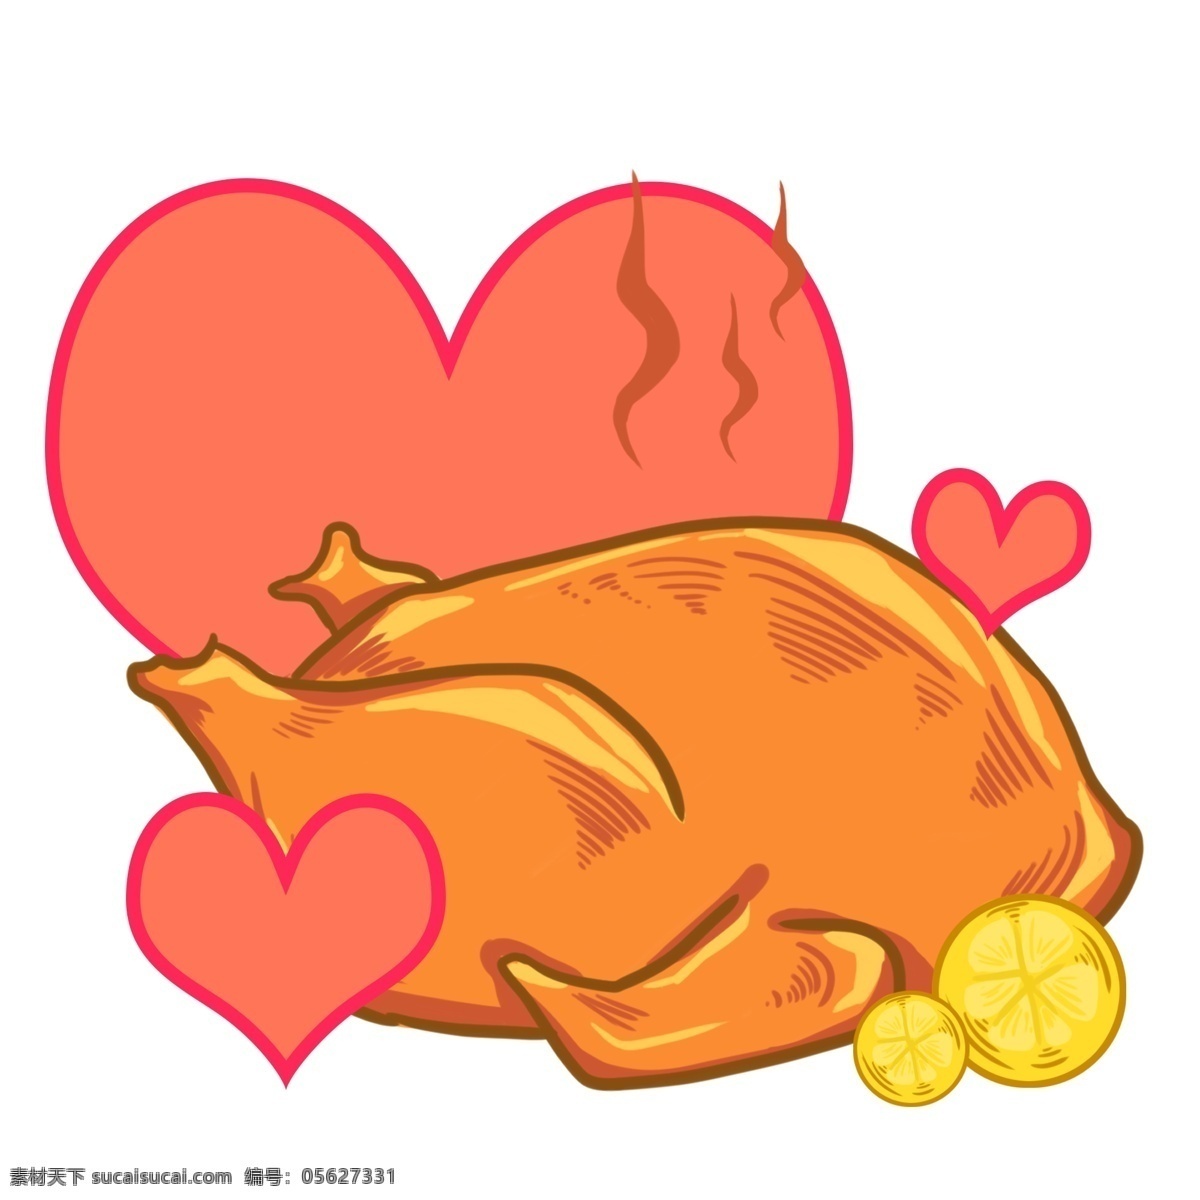 感恩节 火鸡 食物 插画 鸡肉 肉类 家禽 爱心 红色 香喷喷 鸡翅膀 鸡腿 烤鸡 烤火鸡 鸡肉插画